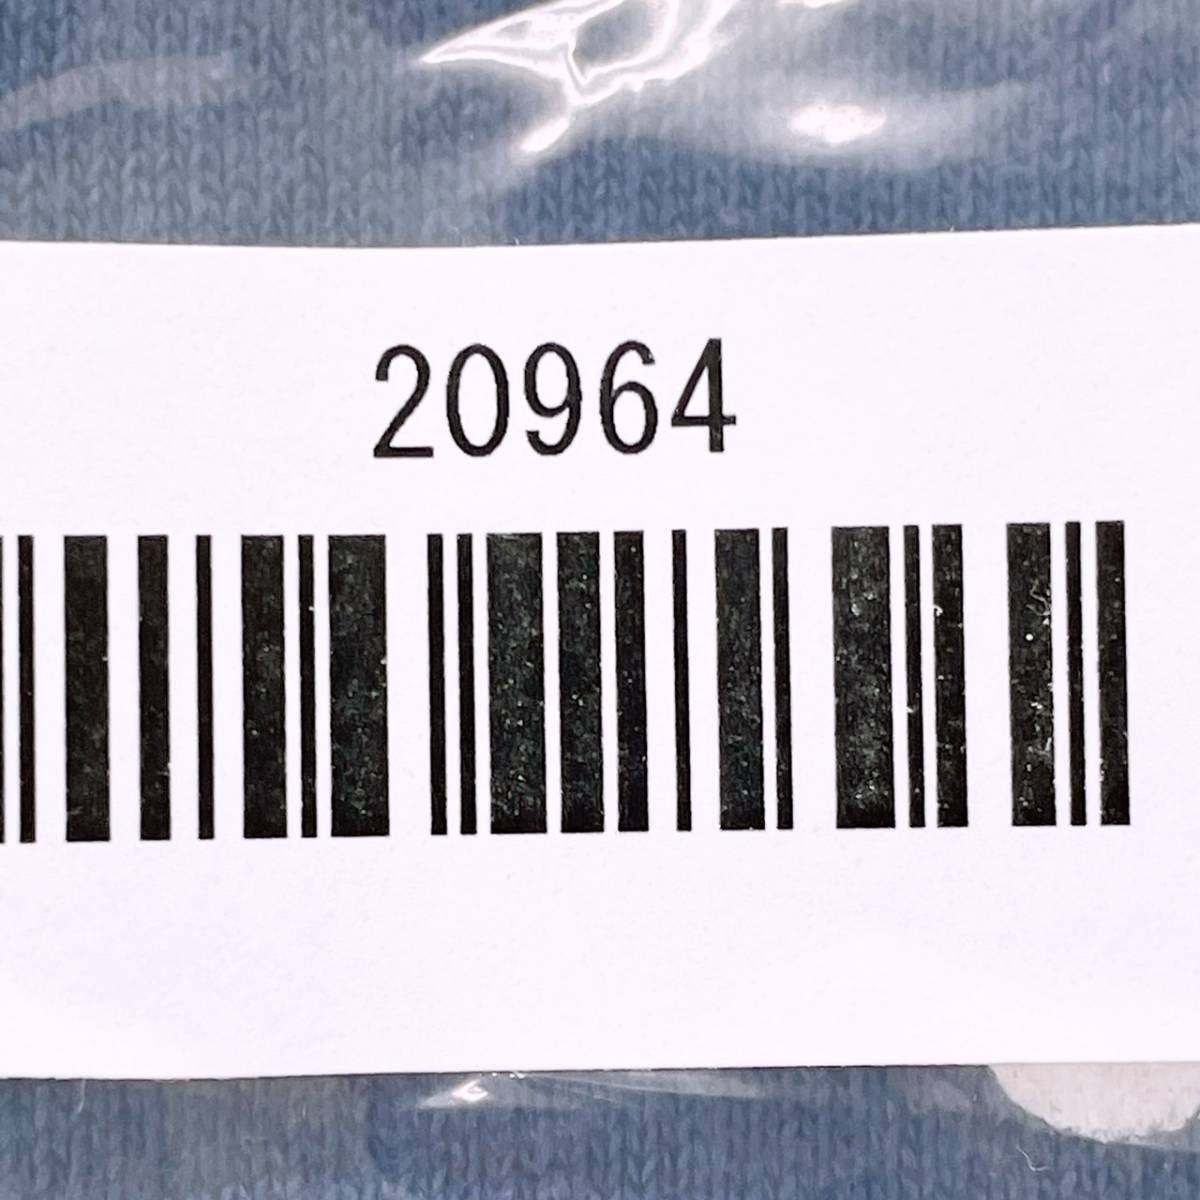 【20964】 ALOHA MADE アロハメイド ファッション レディース トップス シャツ 半袖シャツ Tシャツ 丸ネック ロゴプリント ブルー 青 M